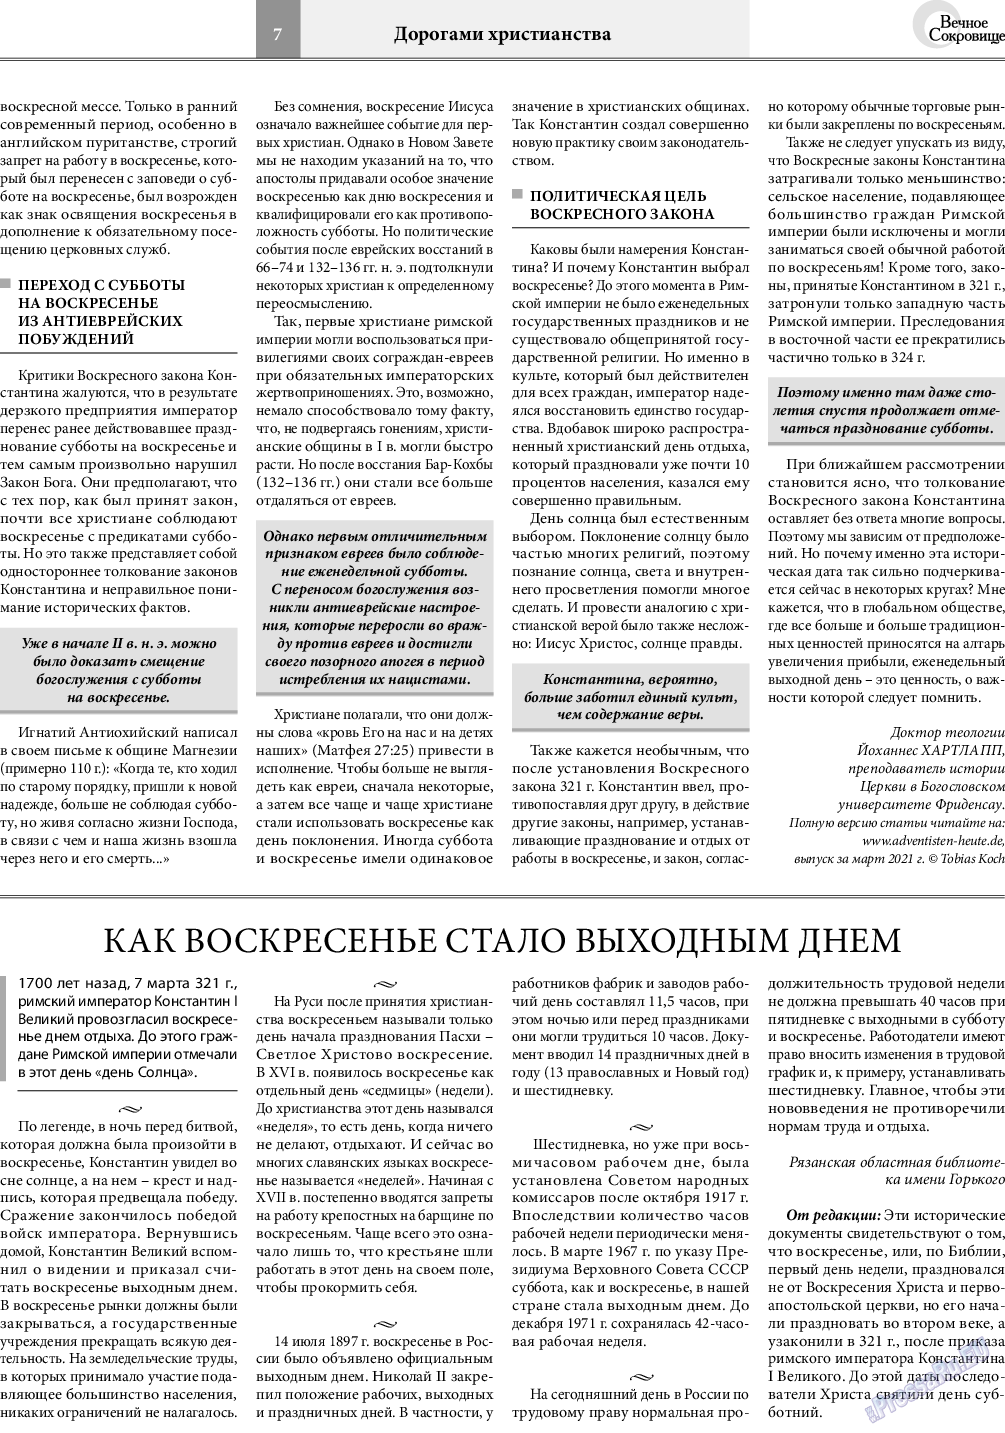 Вечное сокровище, газета. 2021 №2 стр.7